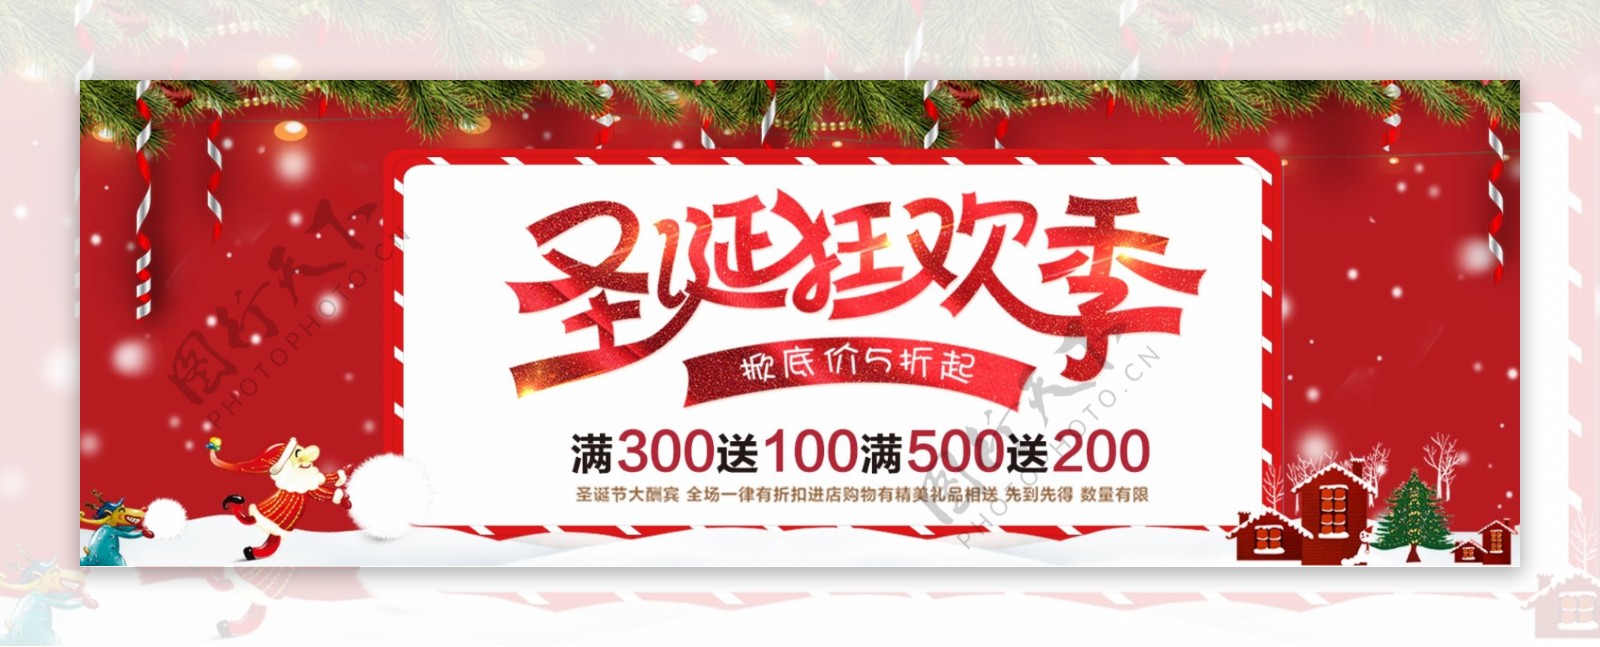 红色简约节日圣诞狂欢季电商banner